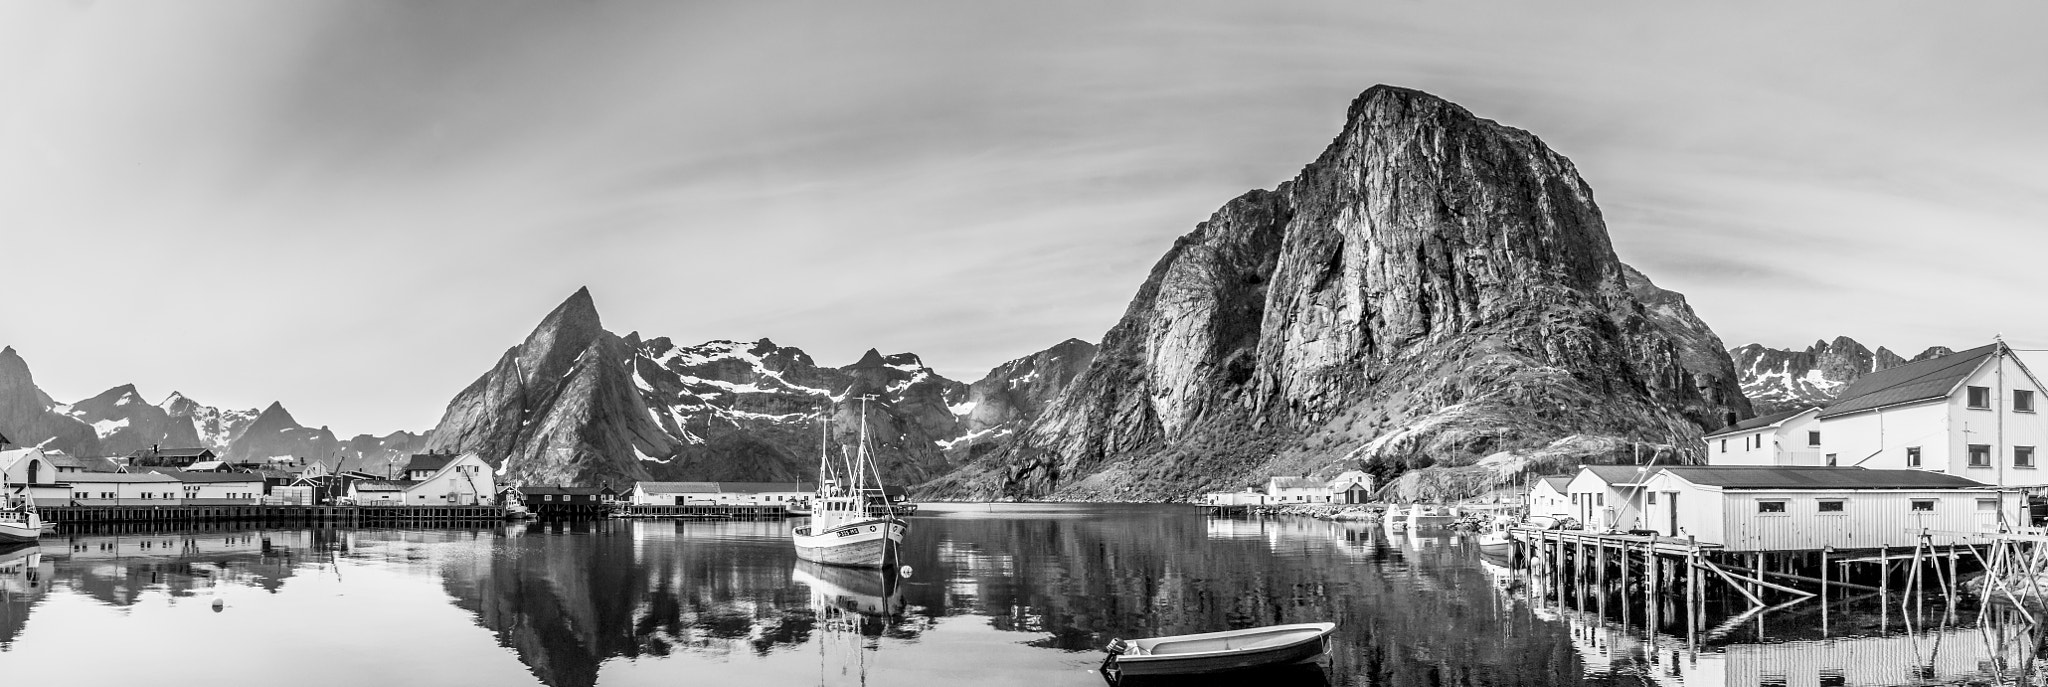 Pentax K-7 sample photo. Norway, lofoten, hamnoya panorama photography